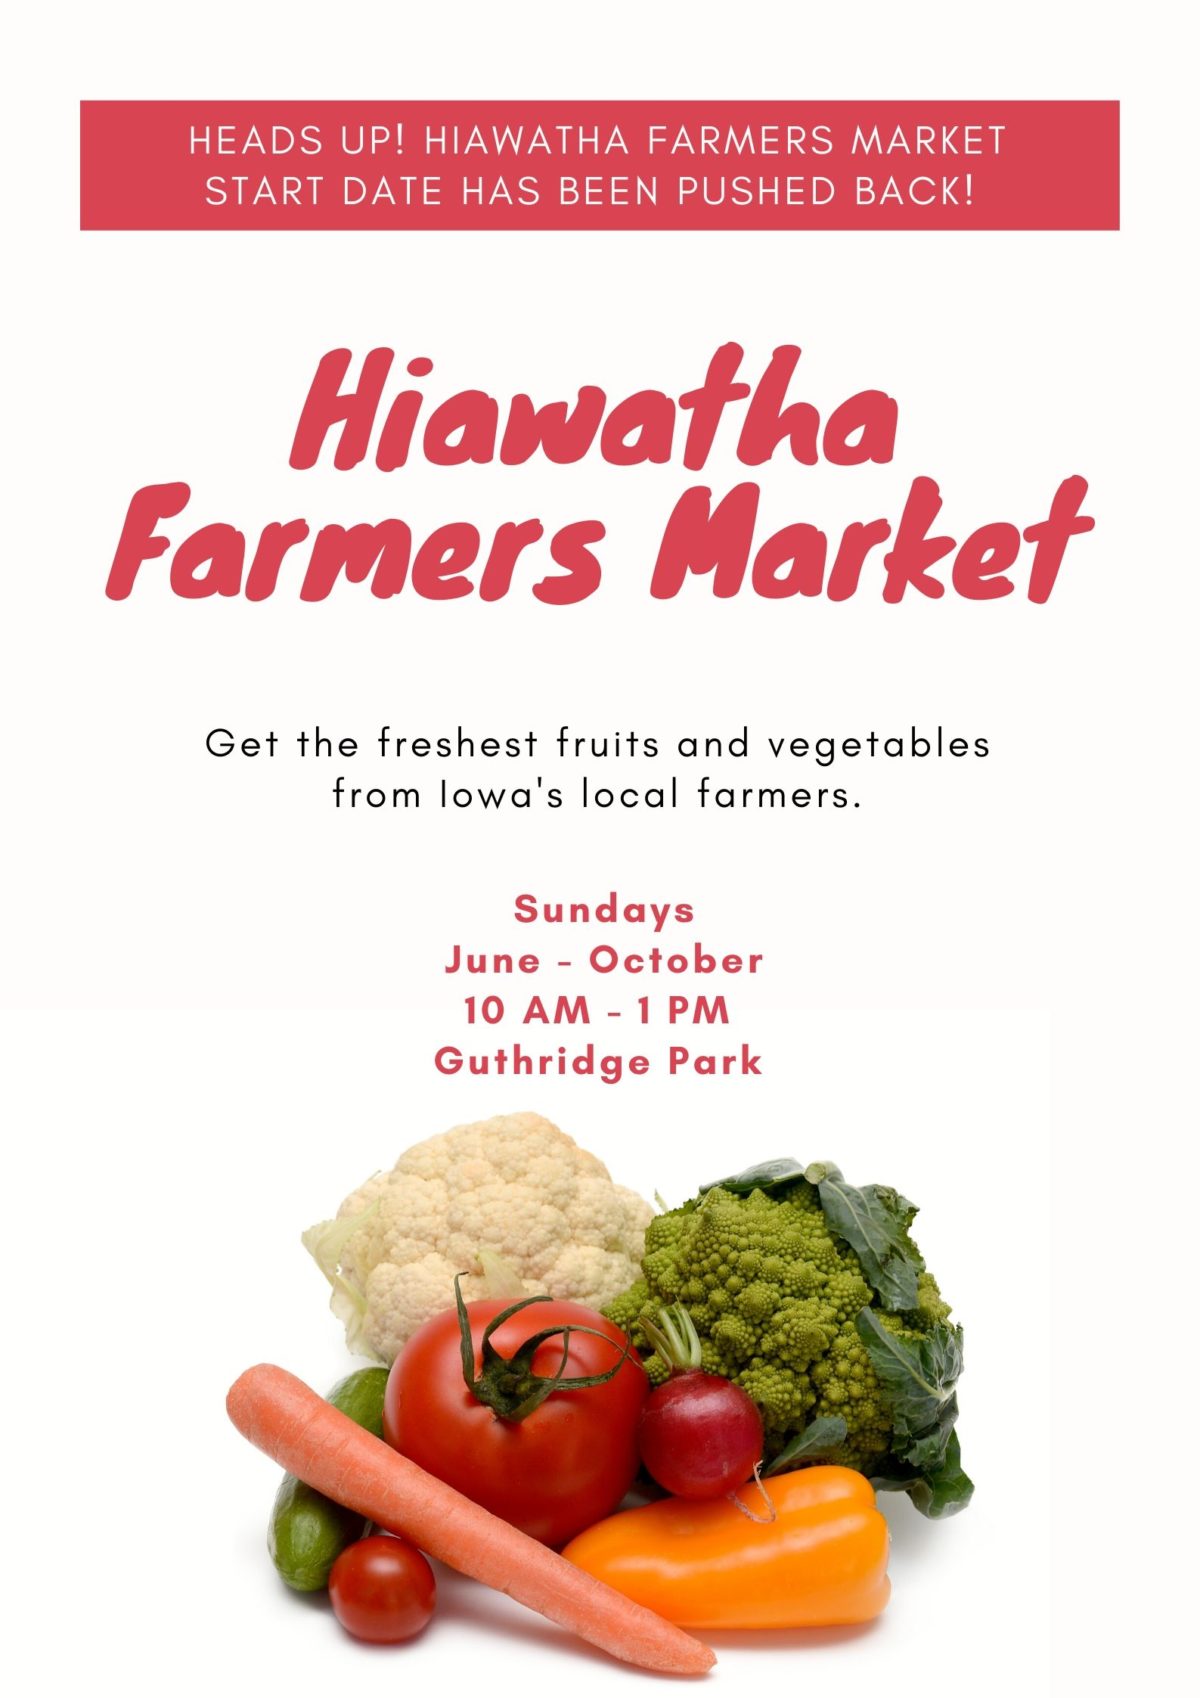 Hiawatha Farmers Market Delayed until June